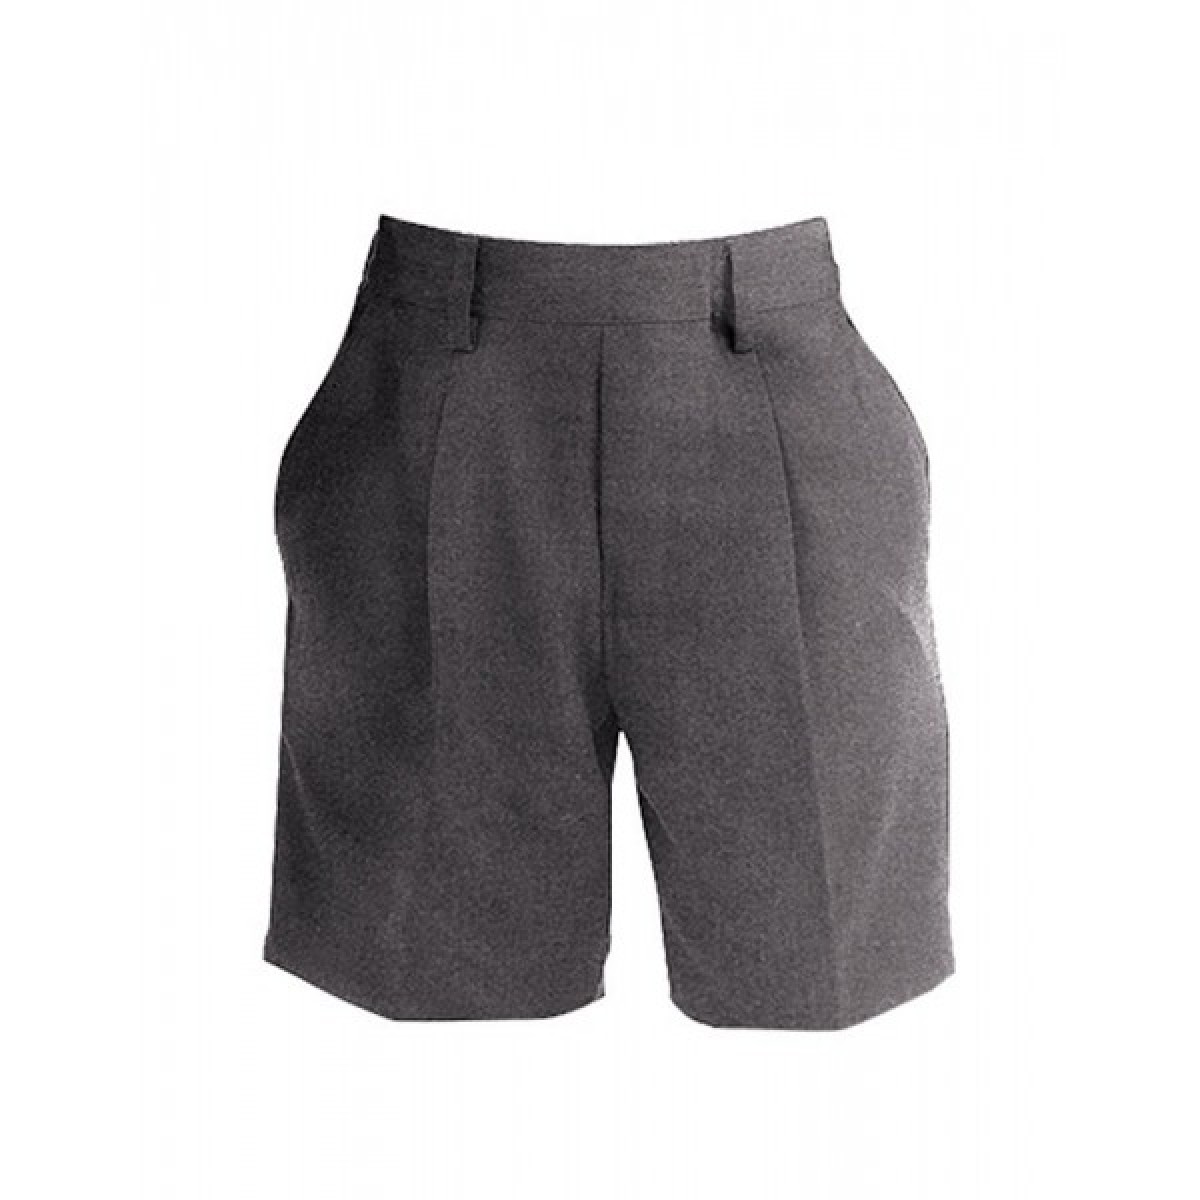 Boys Grey School Shorts - Age 10 (25" Waist)